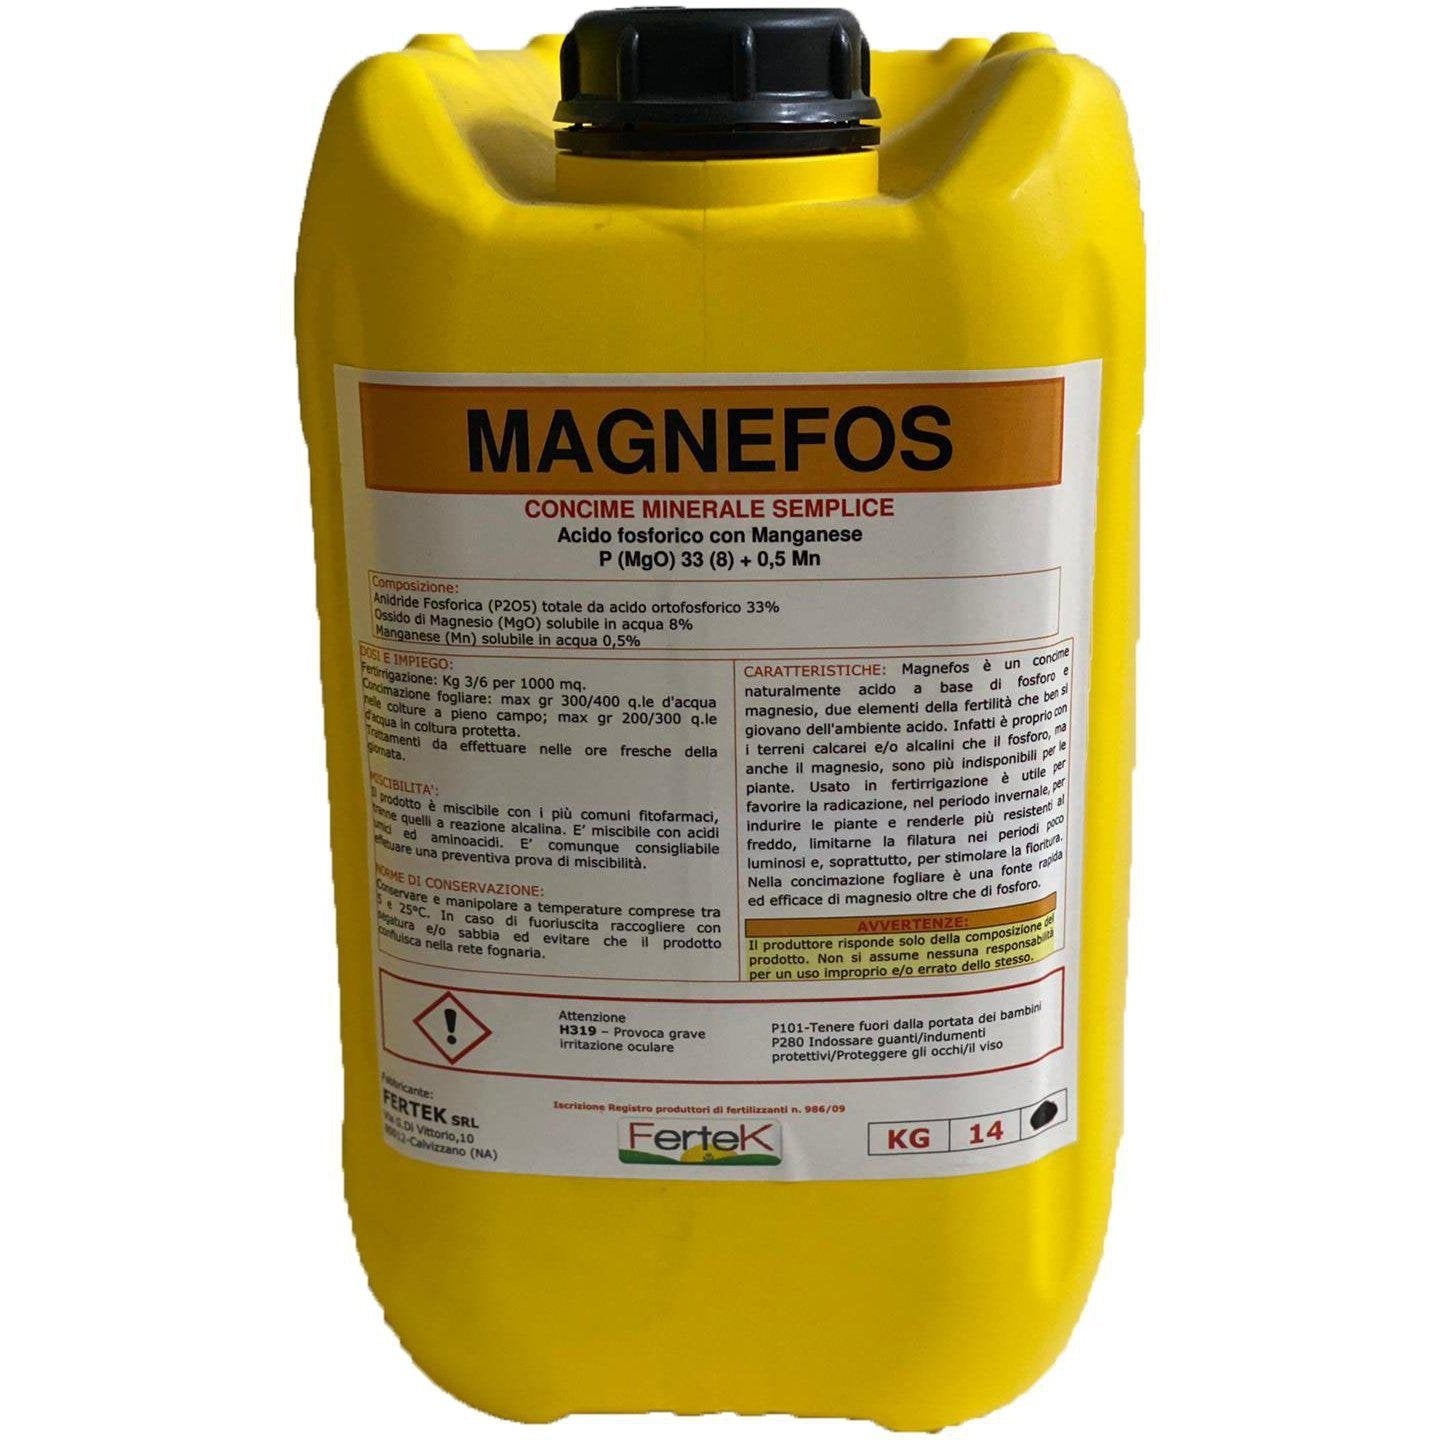 14 kg MAGNEFOS - Concime minerale semplice Acido Fosforico con